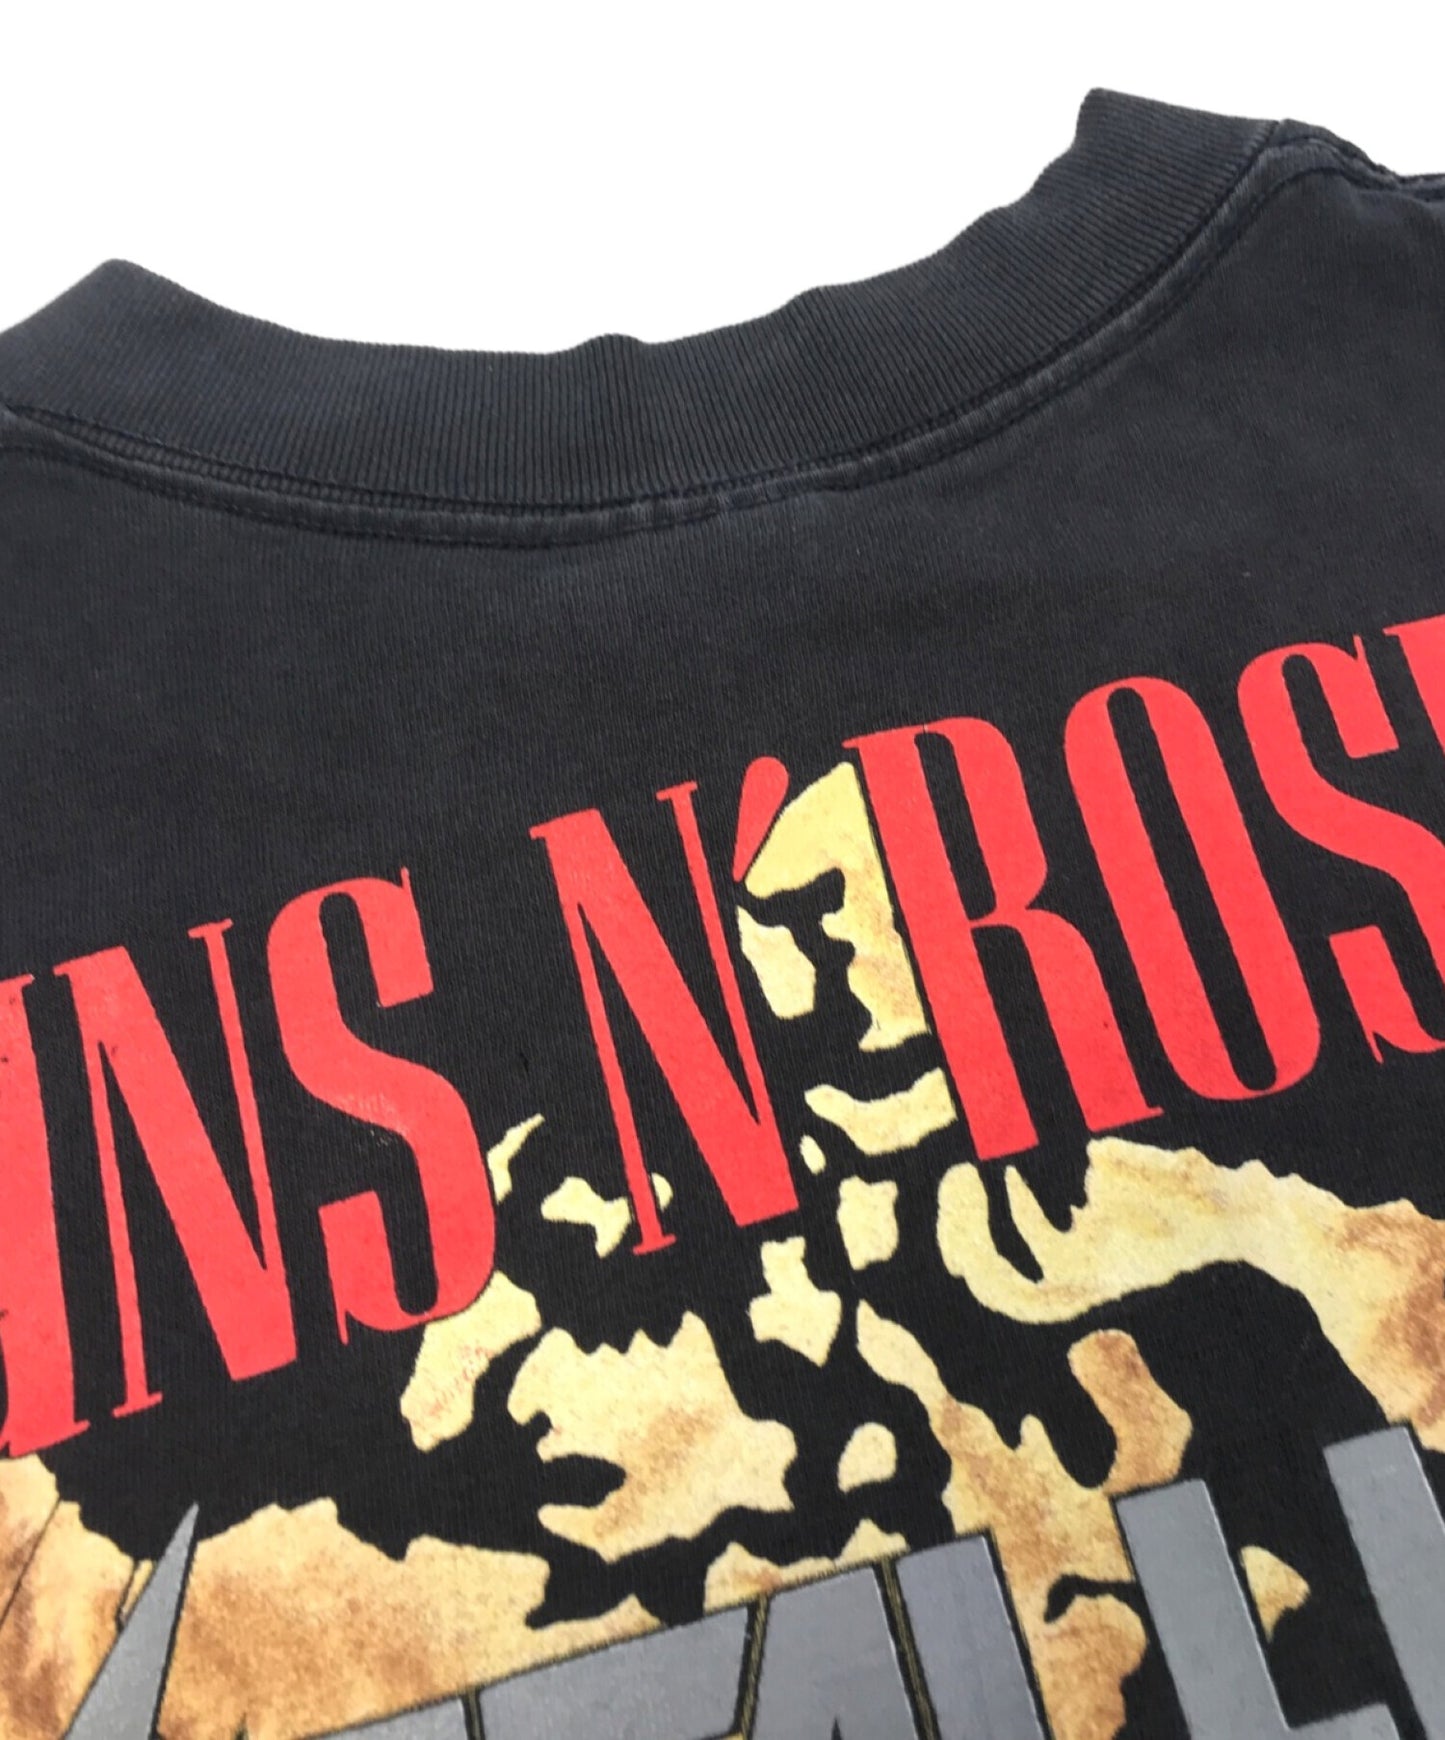 Metallica X Guns N'Roses Band T恤92的巡回赛